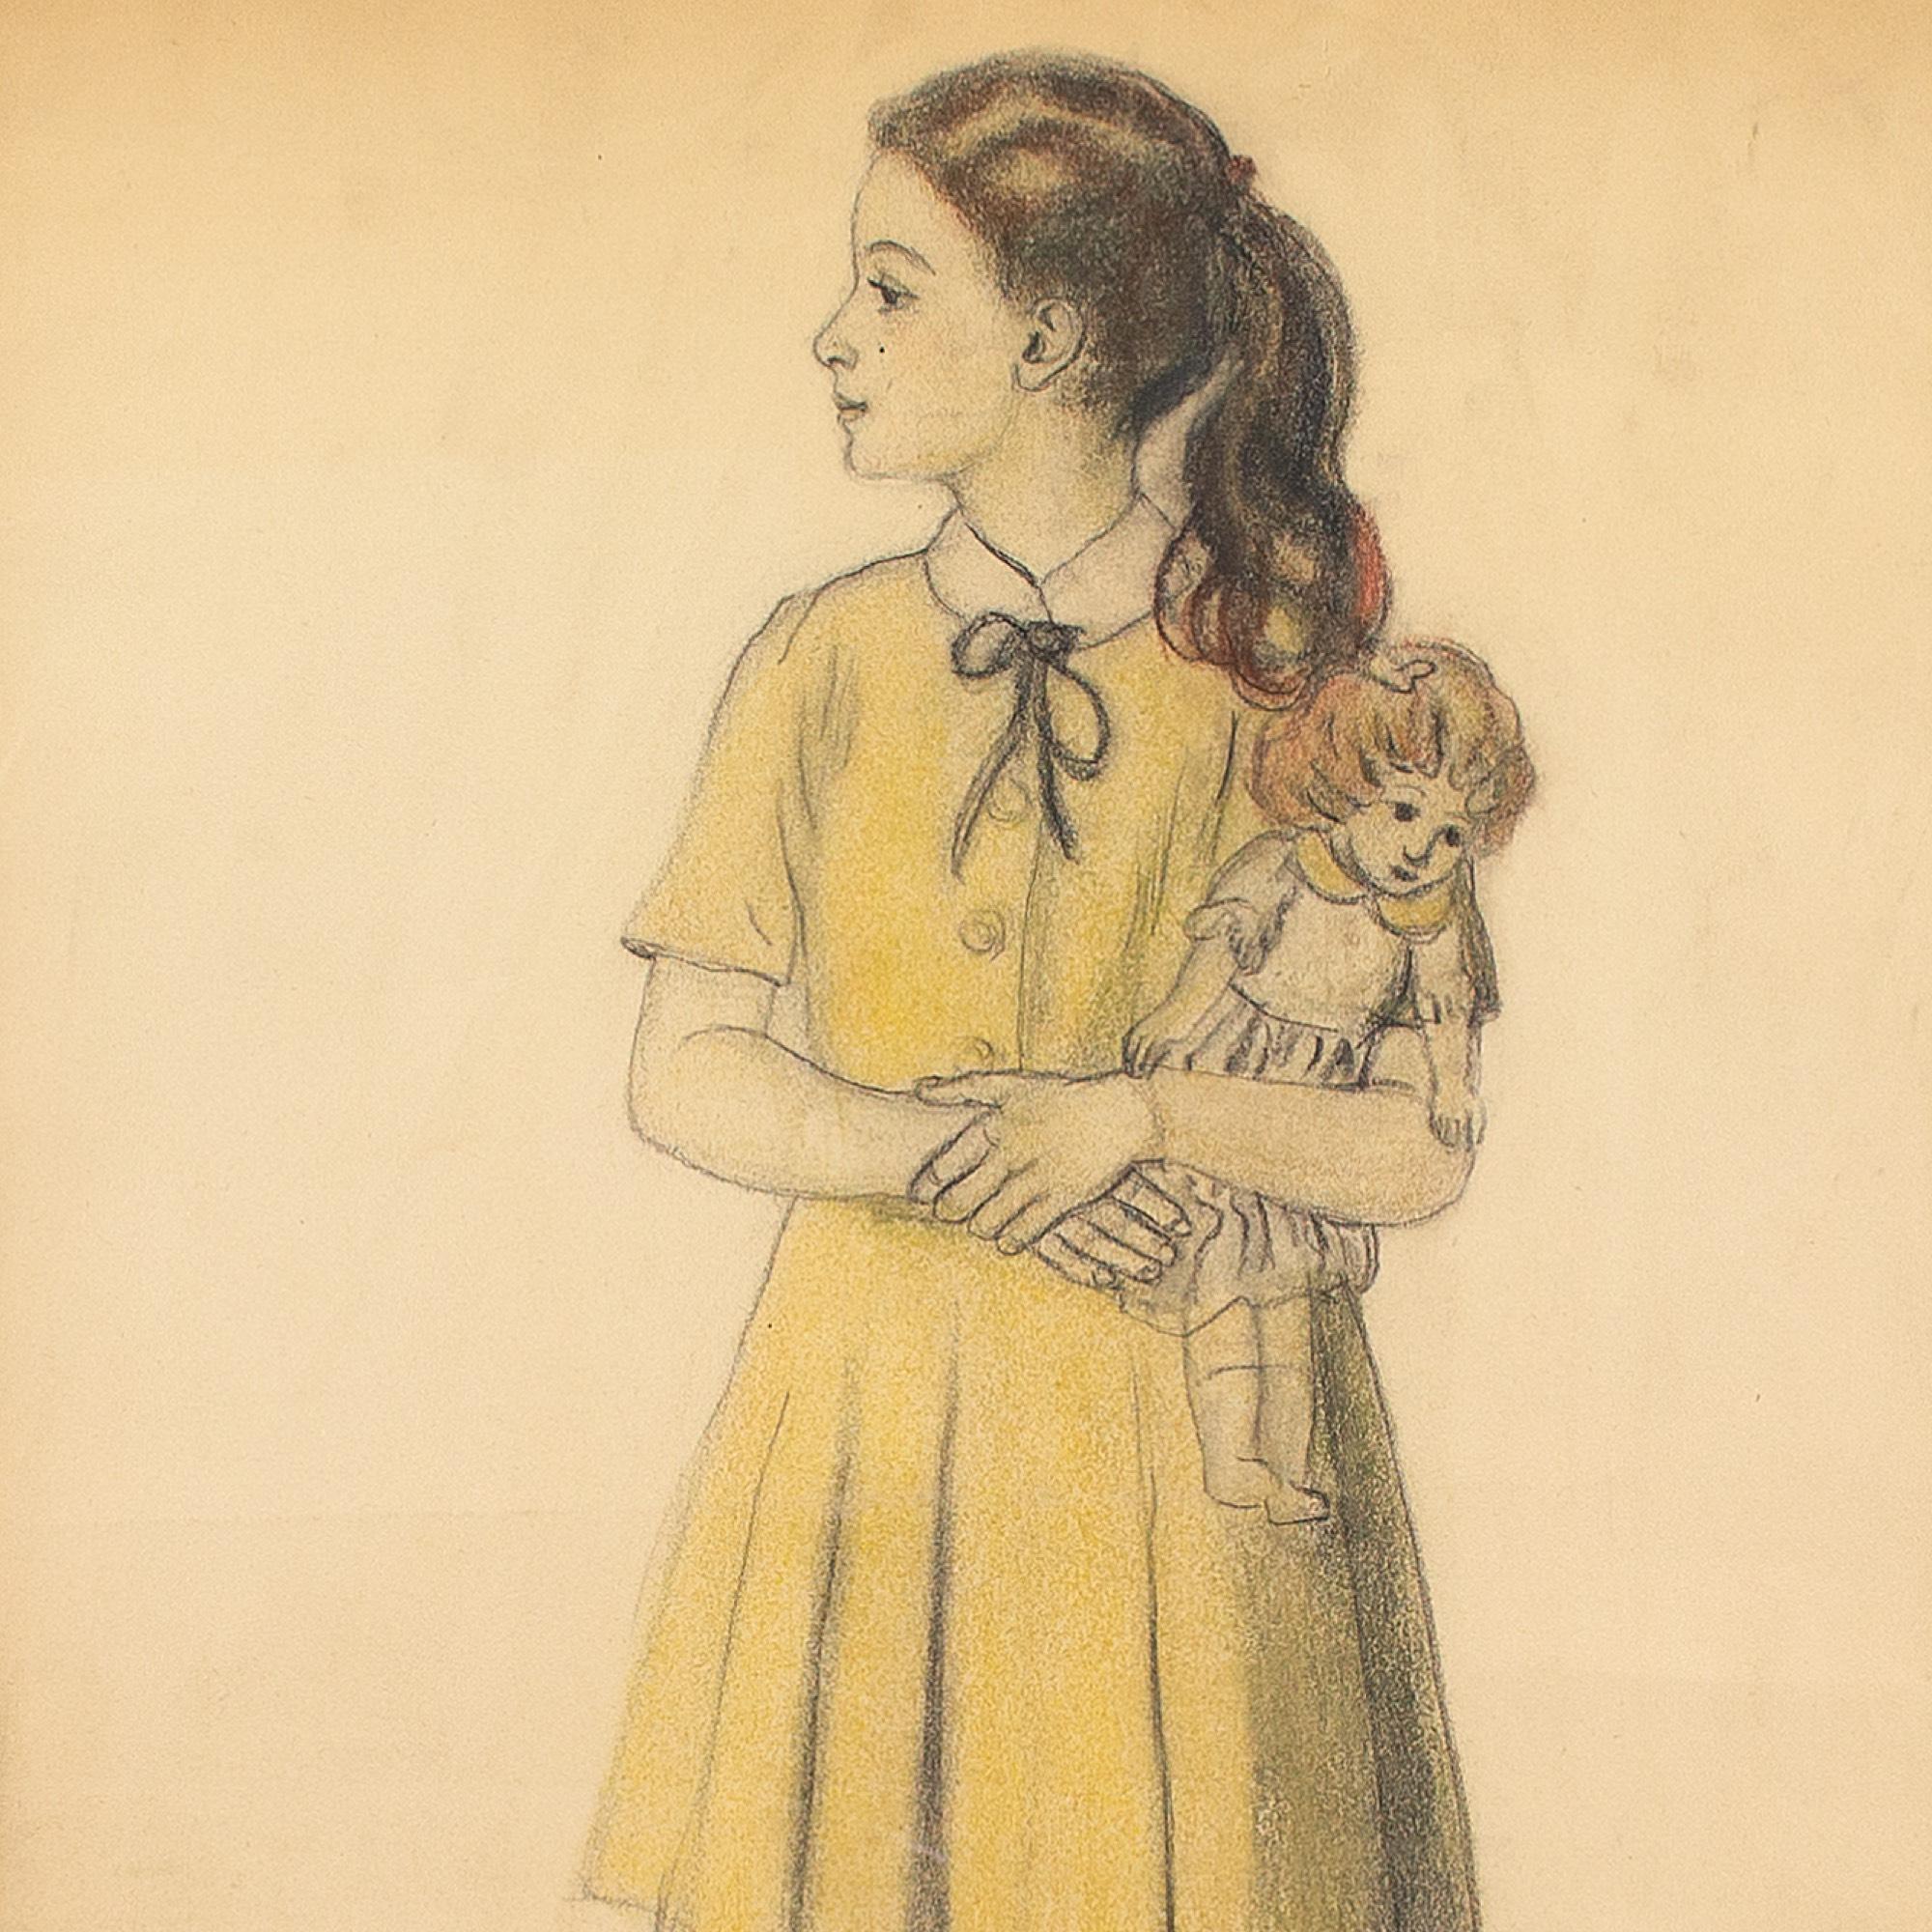 Dieses charmante Porträt des belgischen Künstlers René Choprix (1888-1972) aus der Mitte des 20. Jahrhunderts zeigt ein Mädchen mit einer Puppe. Es ist eine einfühlsame Darstellung und es ist wahrscheinlich seine Enkelin.

Choprix ist vor allem für